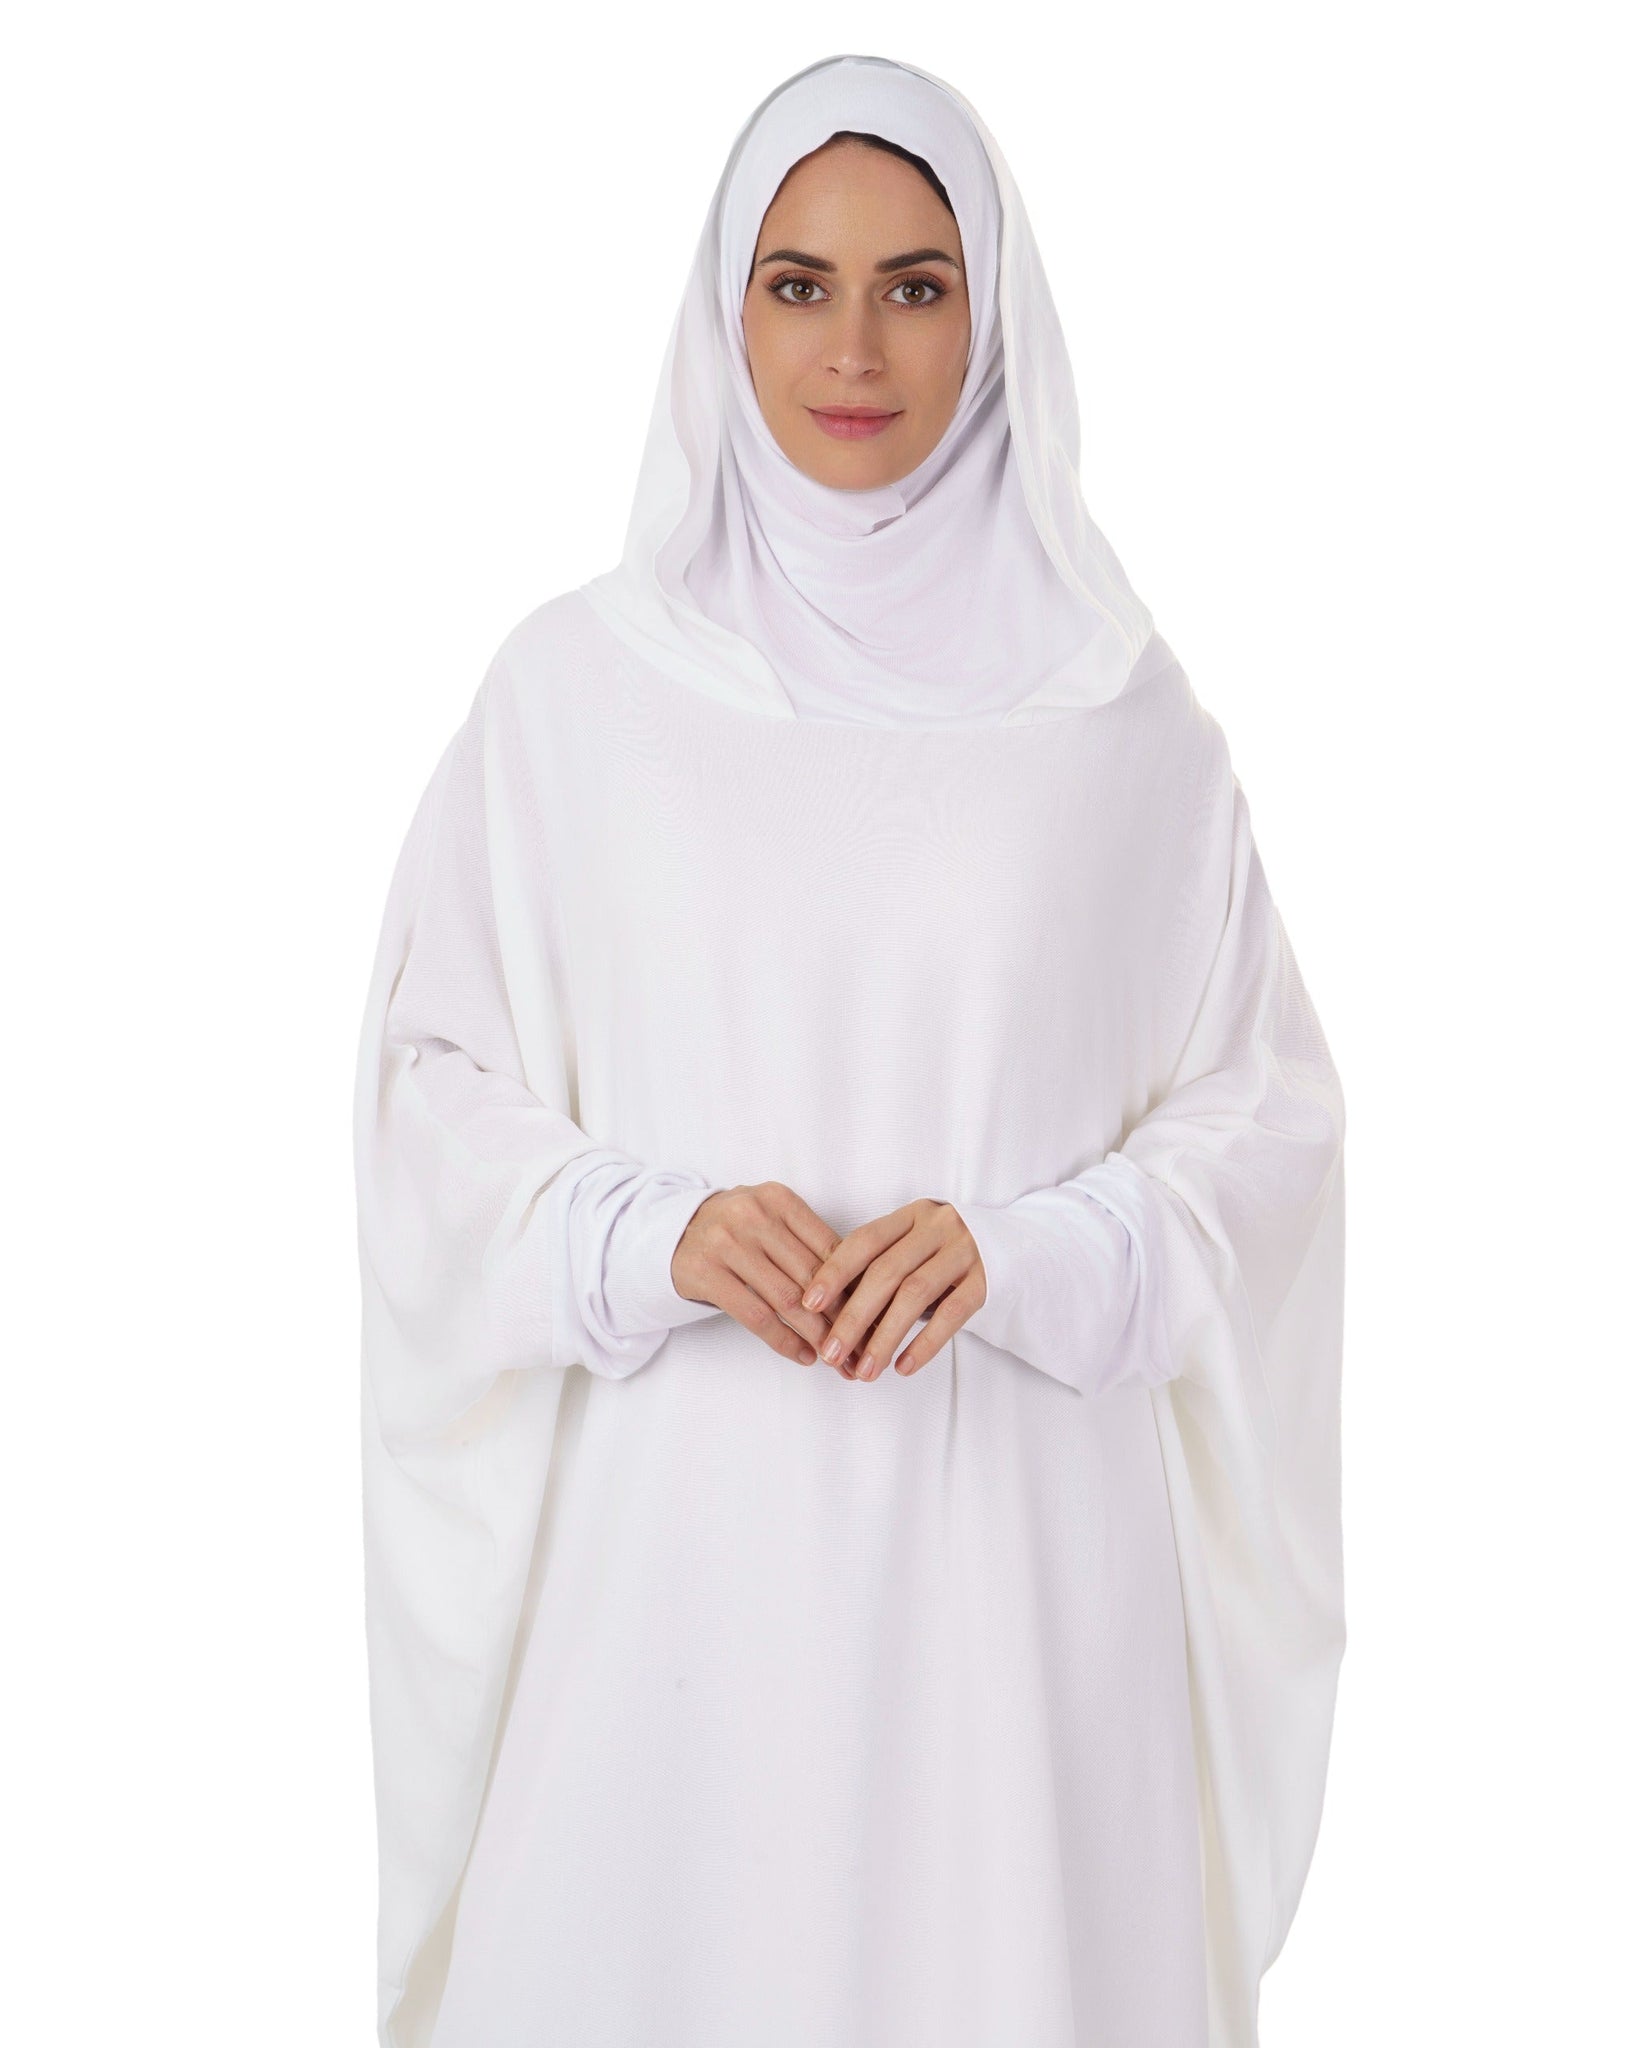 Hanayen Hajj & Umrah Off-White Abaya